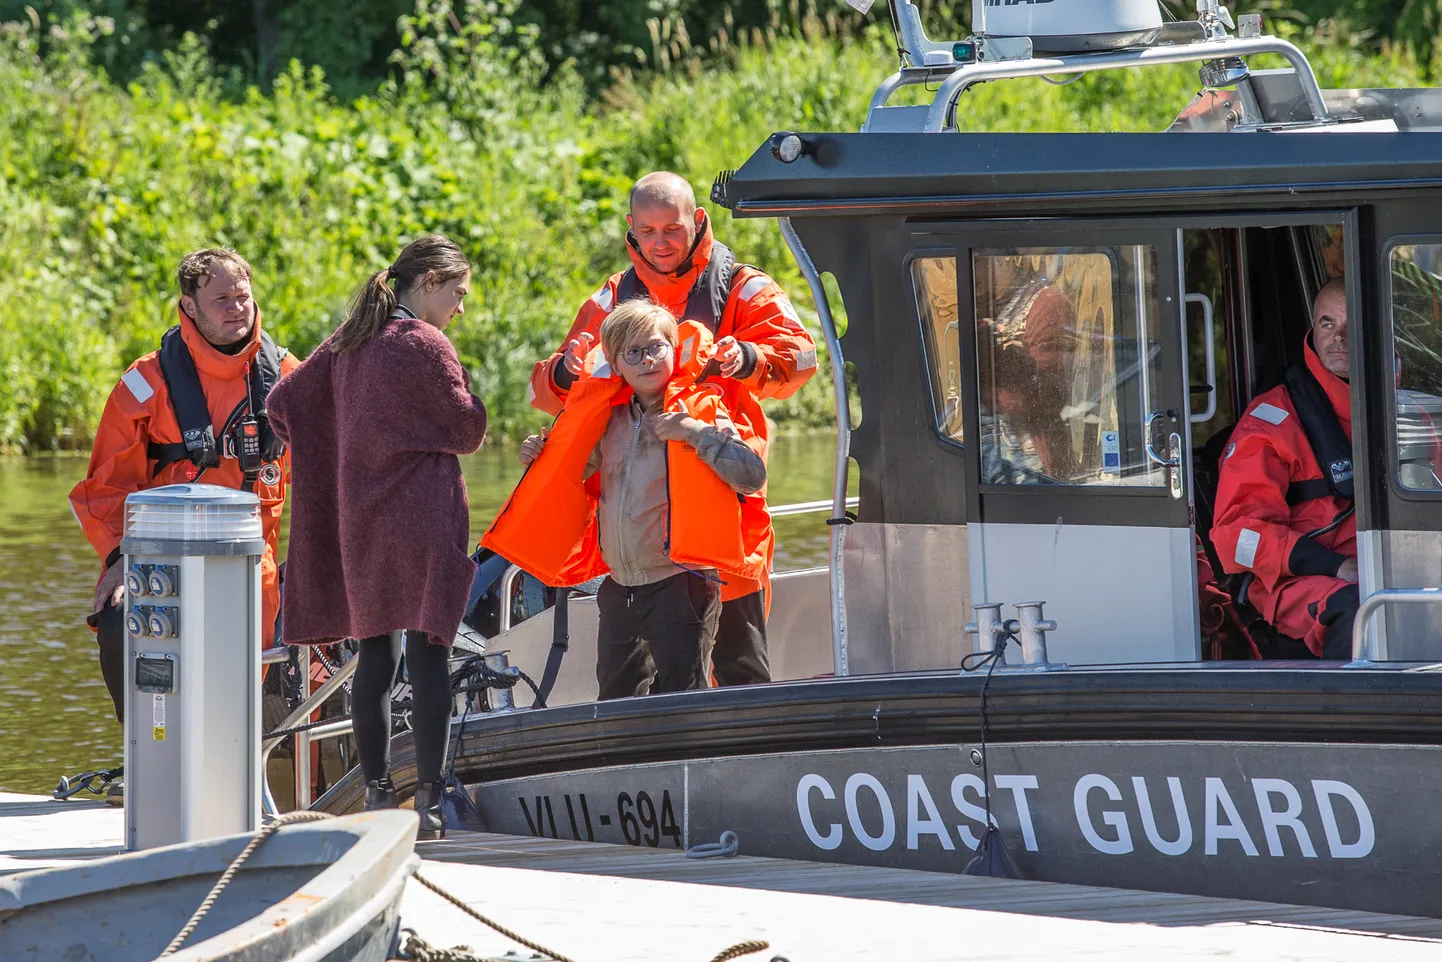 Toila vabatahtlikud merepäästjad ei tegele mitte ainult turvalisuse tagamisega, vaid löövad kaasa ka filmis, kui vaja. Pilt on tehtud 2020. aasta suvel, kui Toila sadamas võeti üles rahvusvahelise filmi "Erik Kivisüda" lõpustseeni.